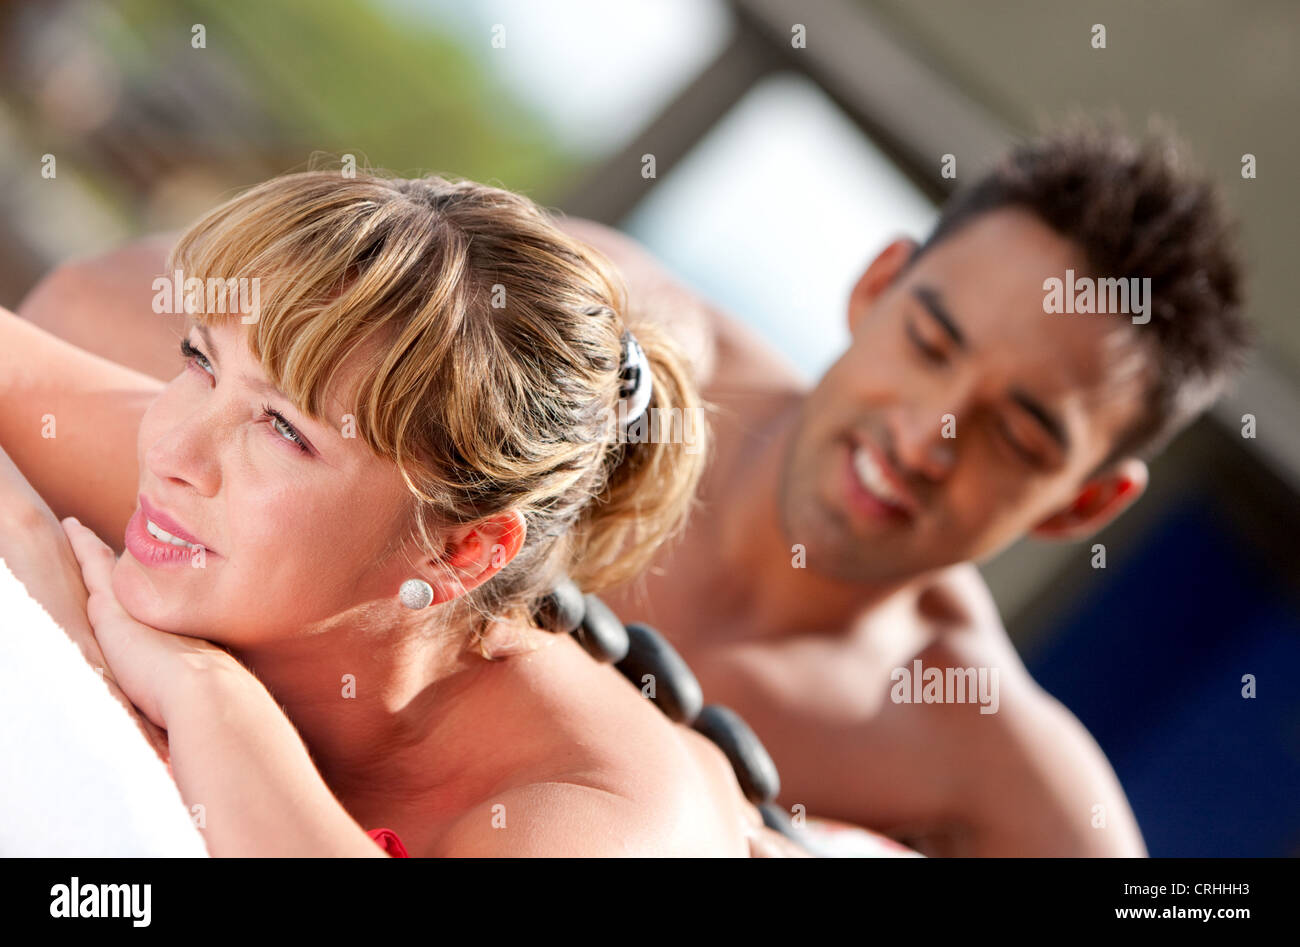 woman getting a hot stone massage Stock Photo